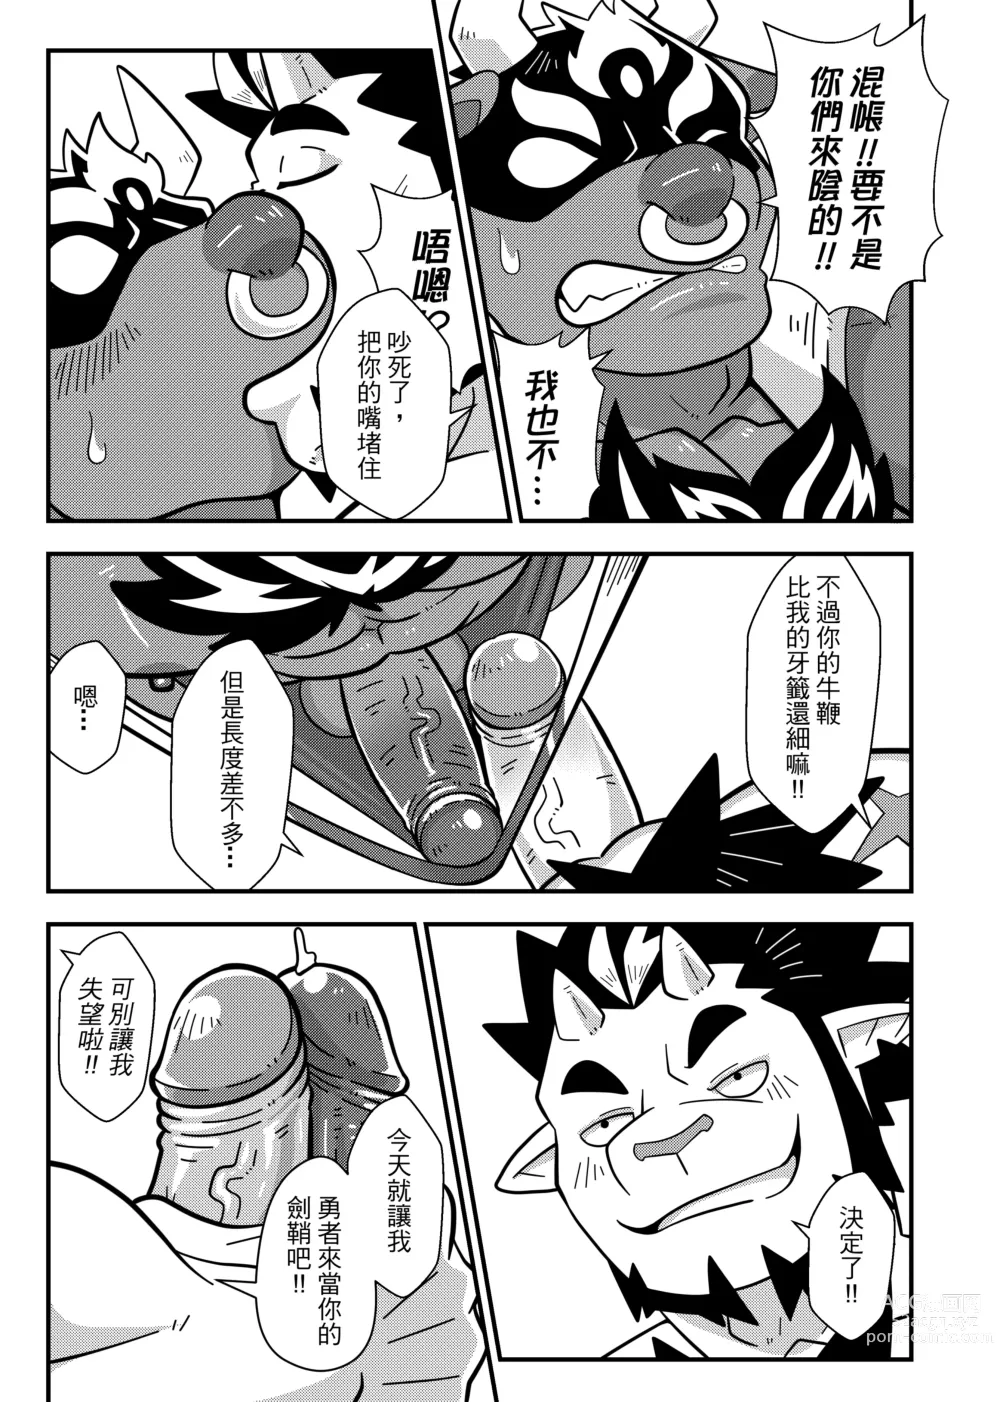 Page 42 of doujinshi 勇者的大小只有魔王塞得下4